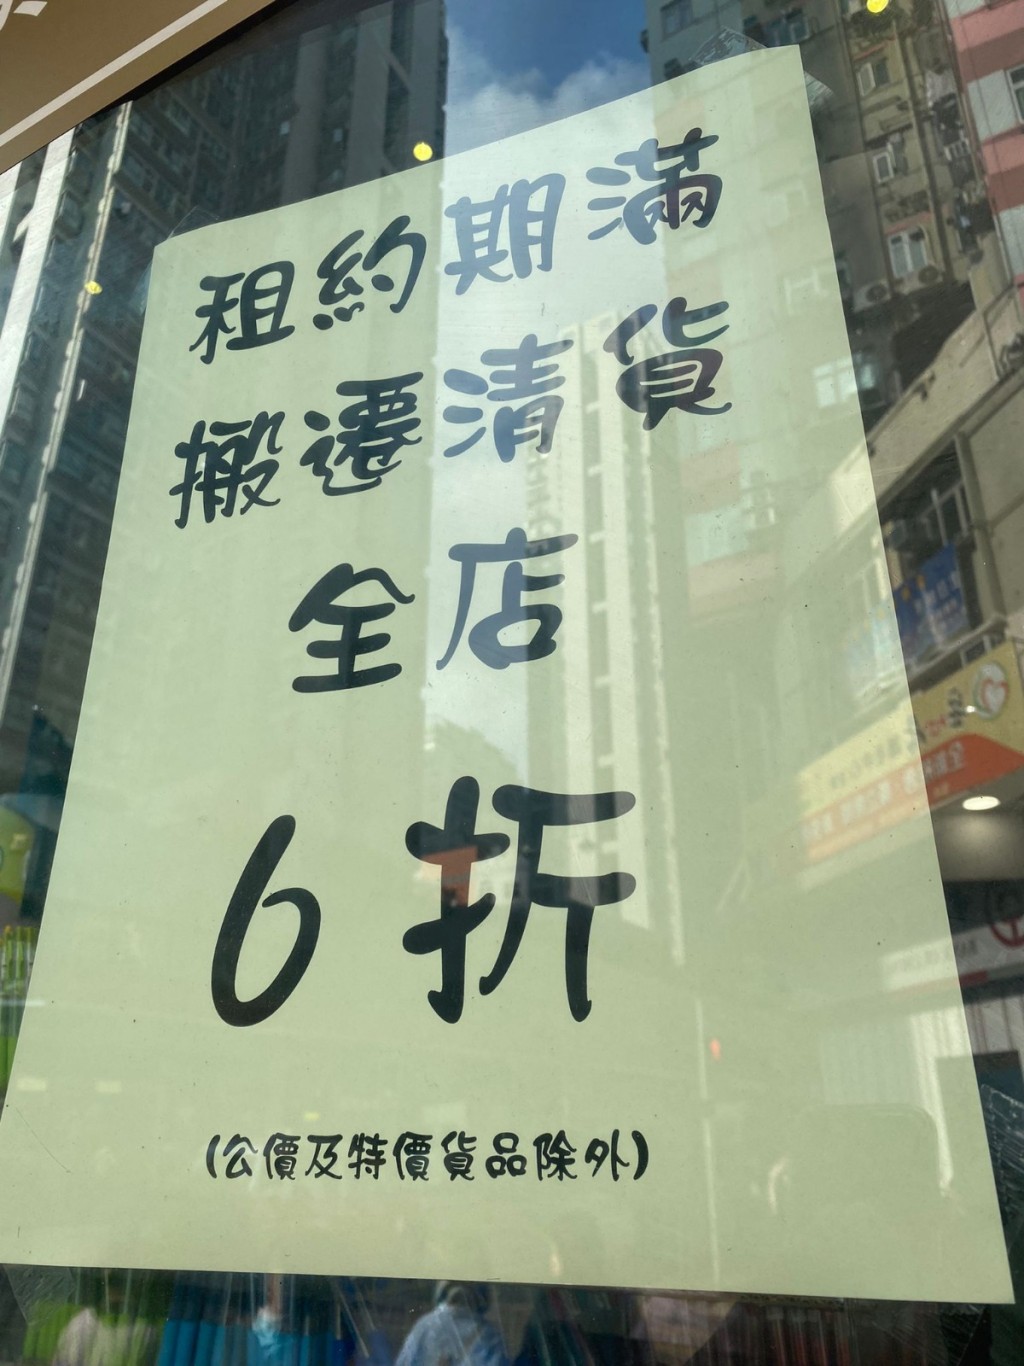 然而，近日就有网民发现中南广场在店内贴出「租约期满，搬迁清货」的告示（图片来源：Katland Studio＠Facebook）